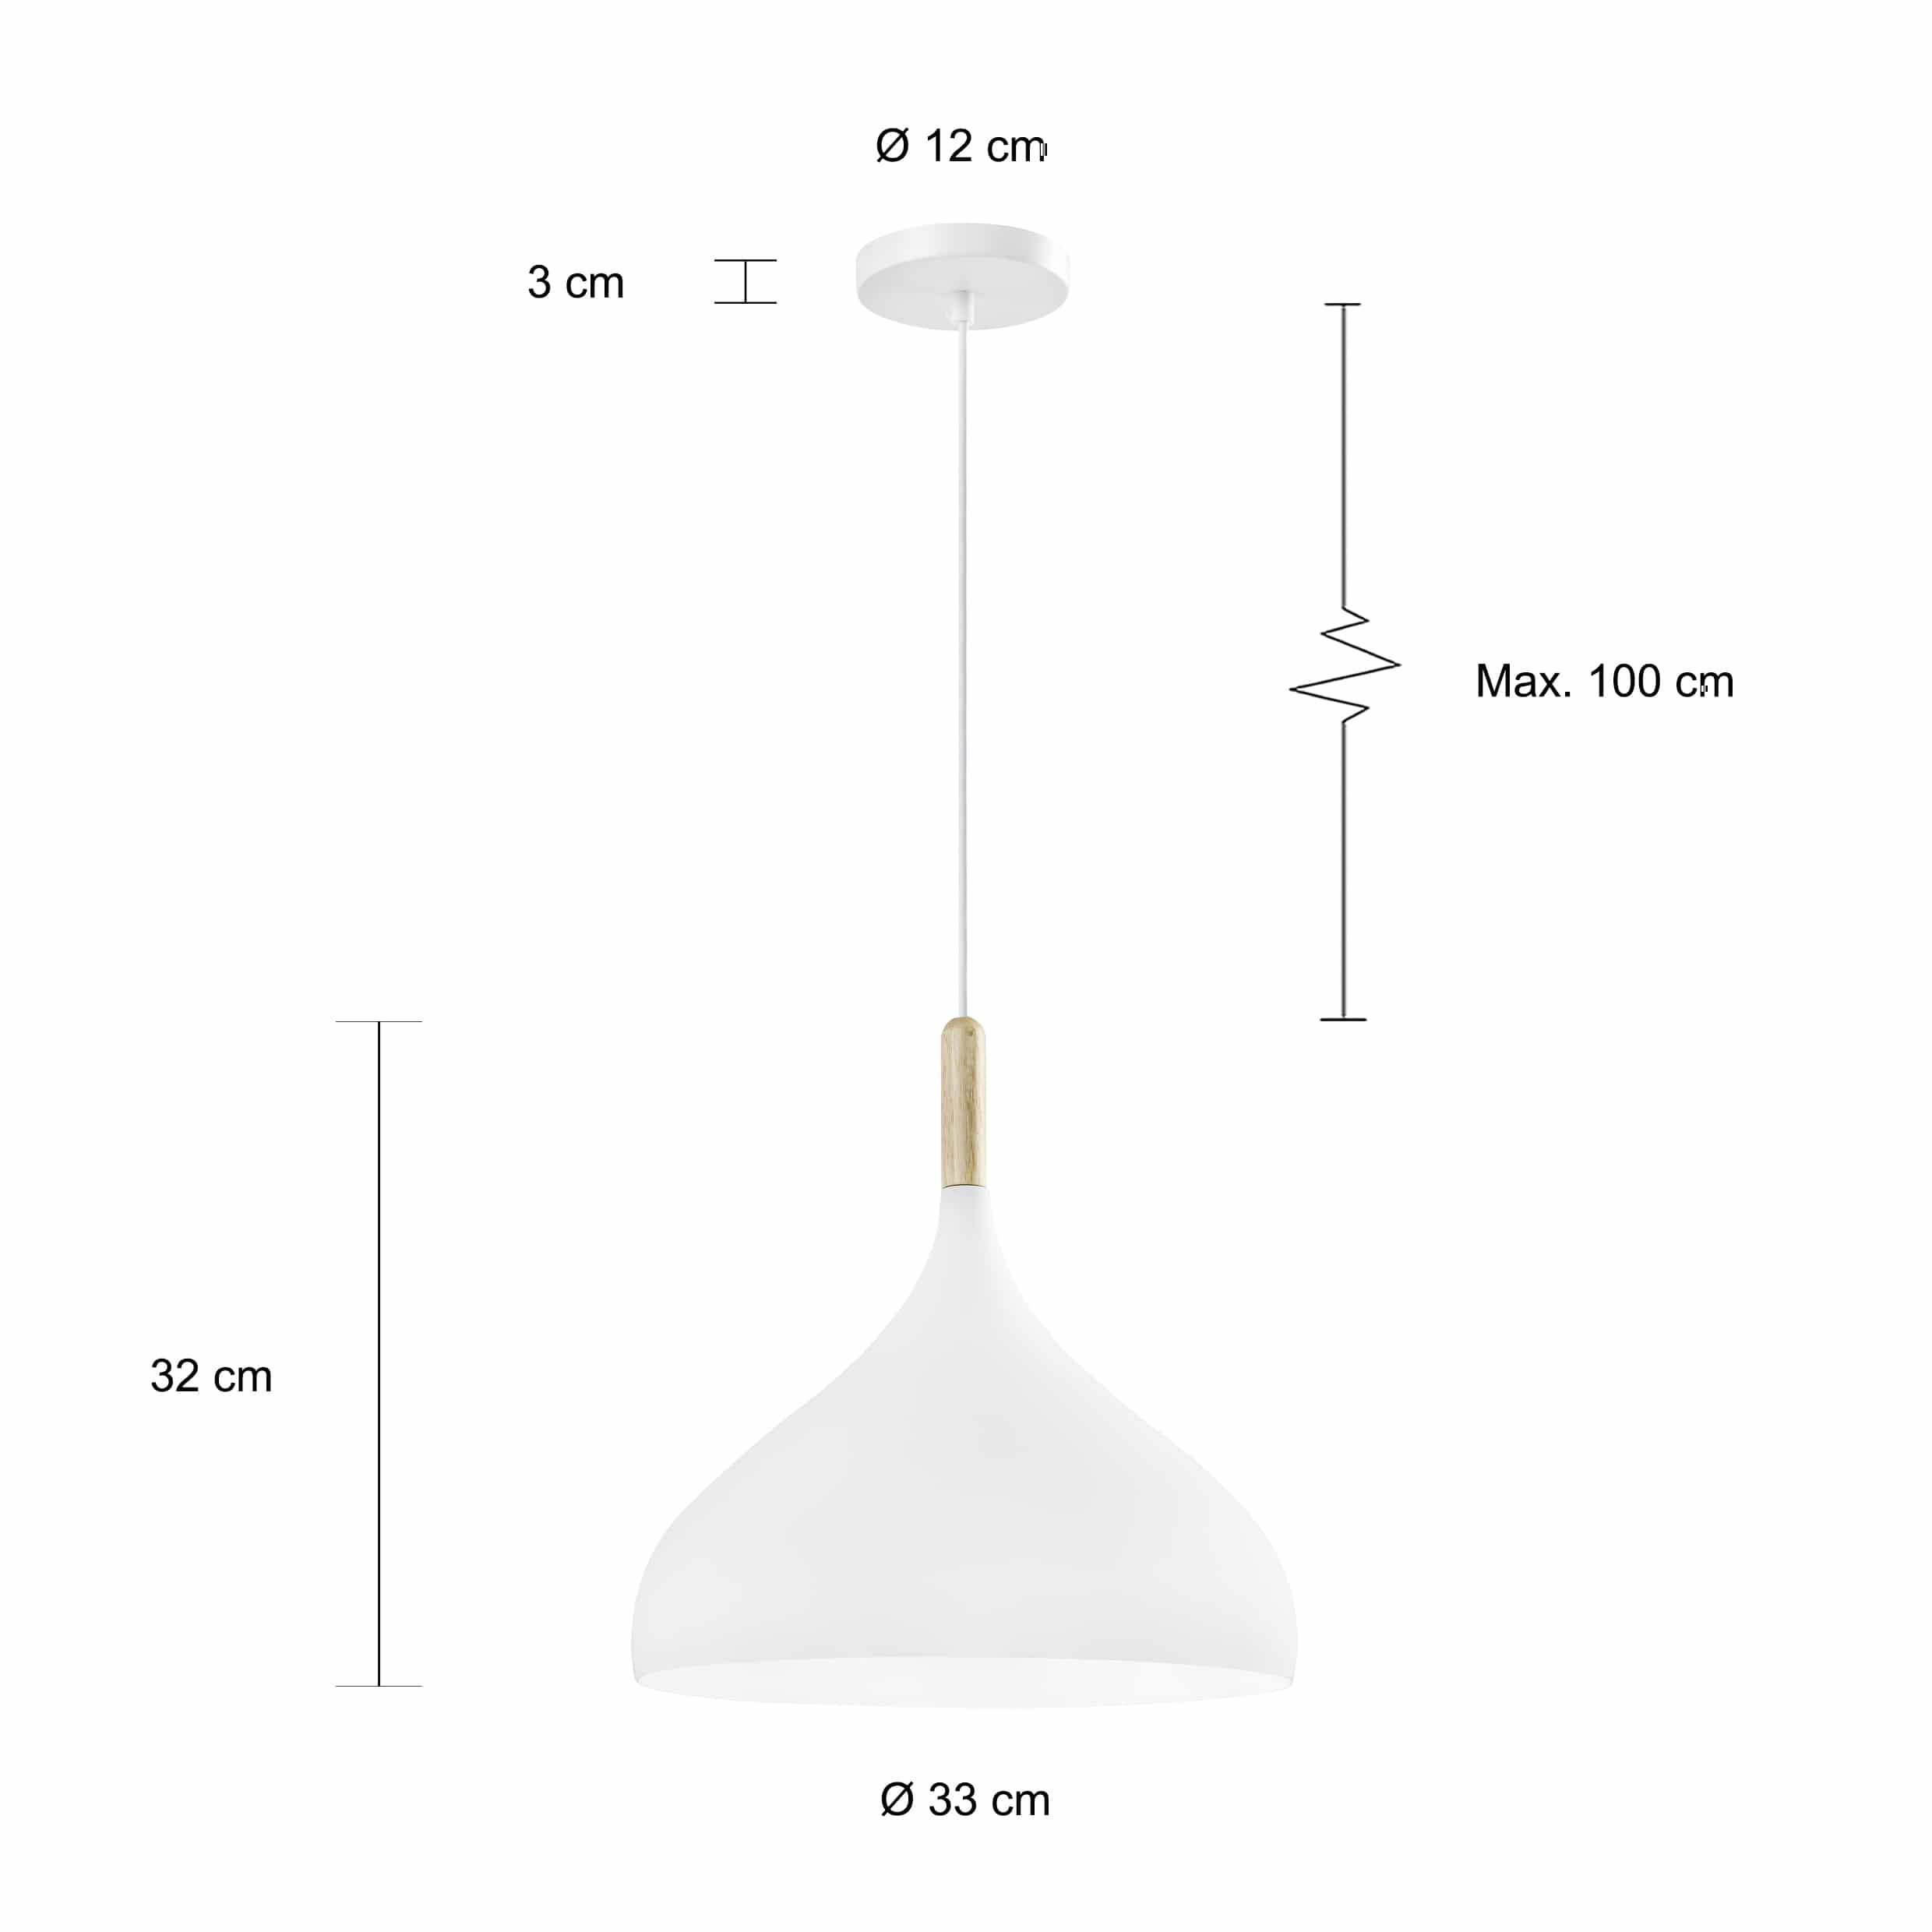 Specificaties van de wit bolvormige hanglamp